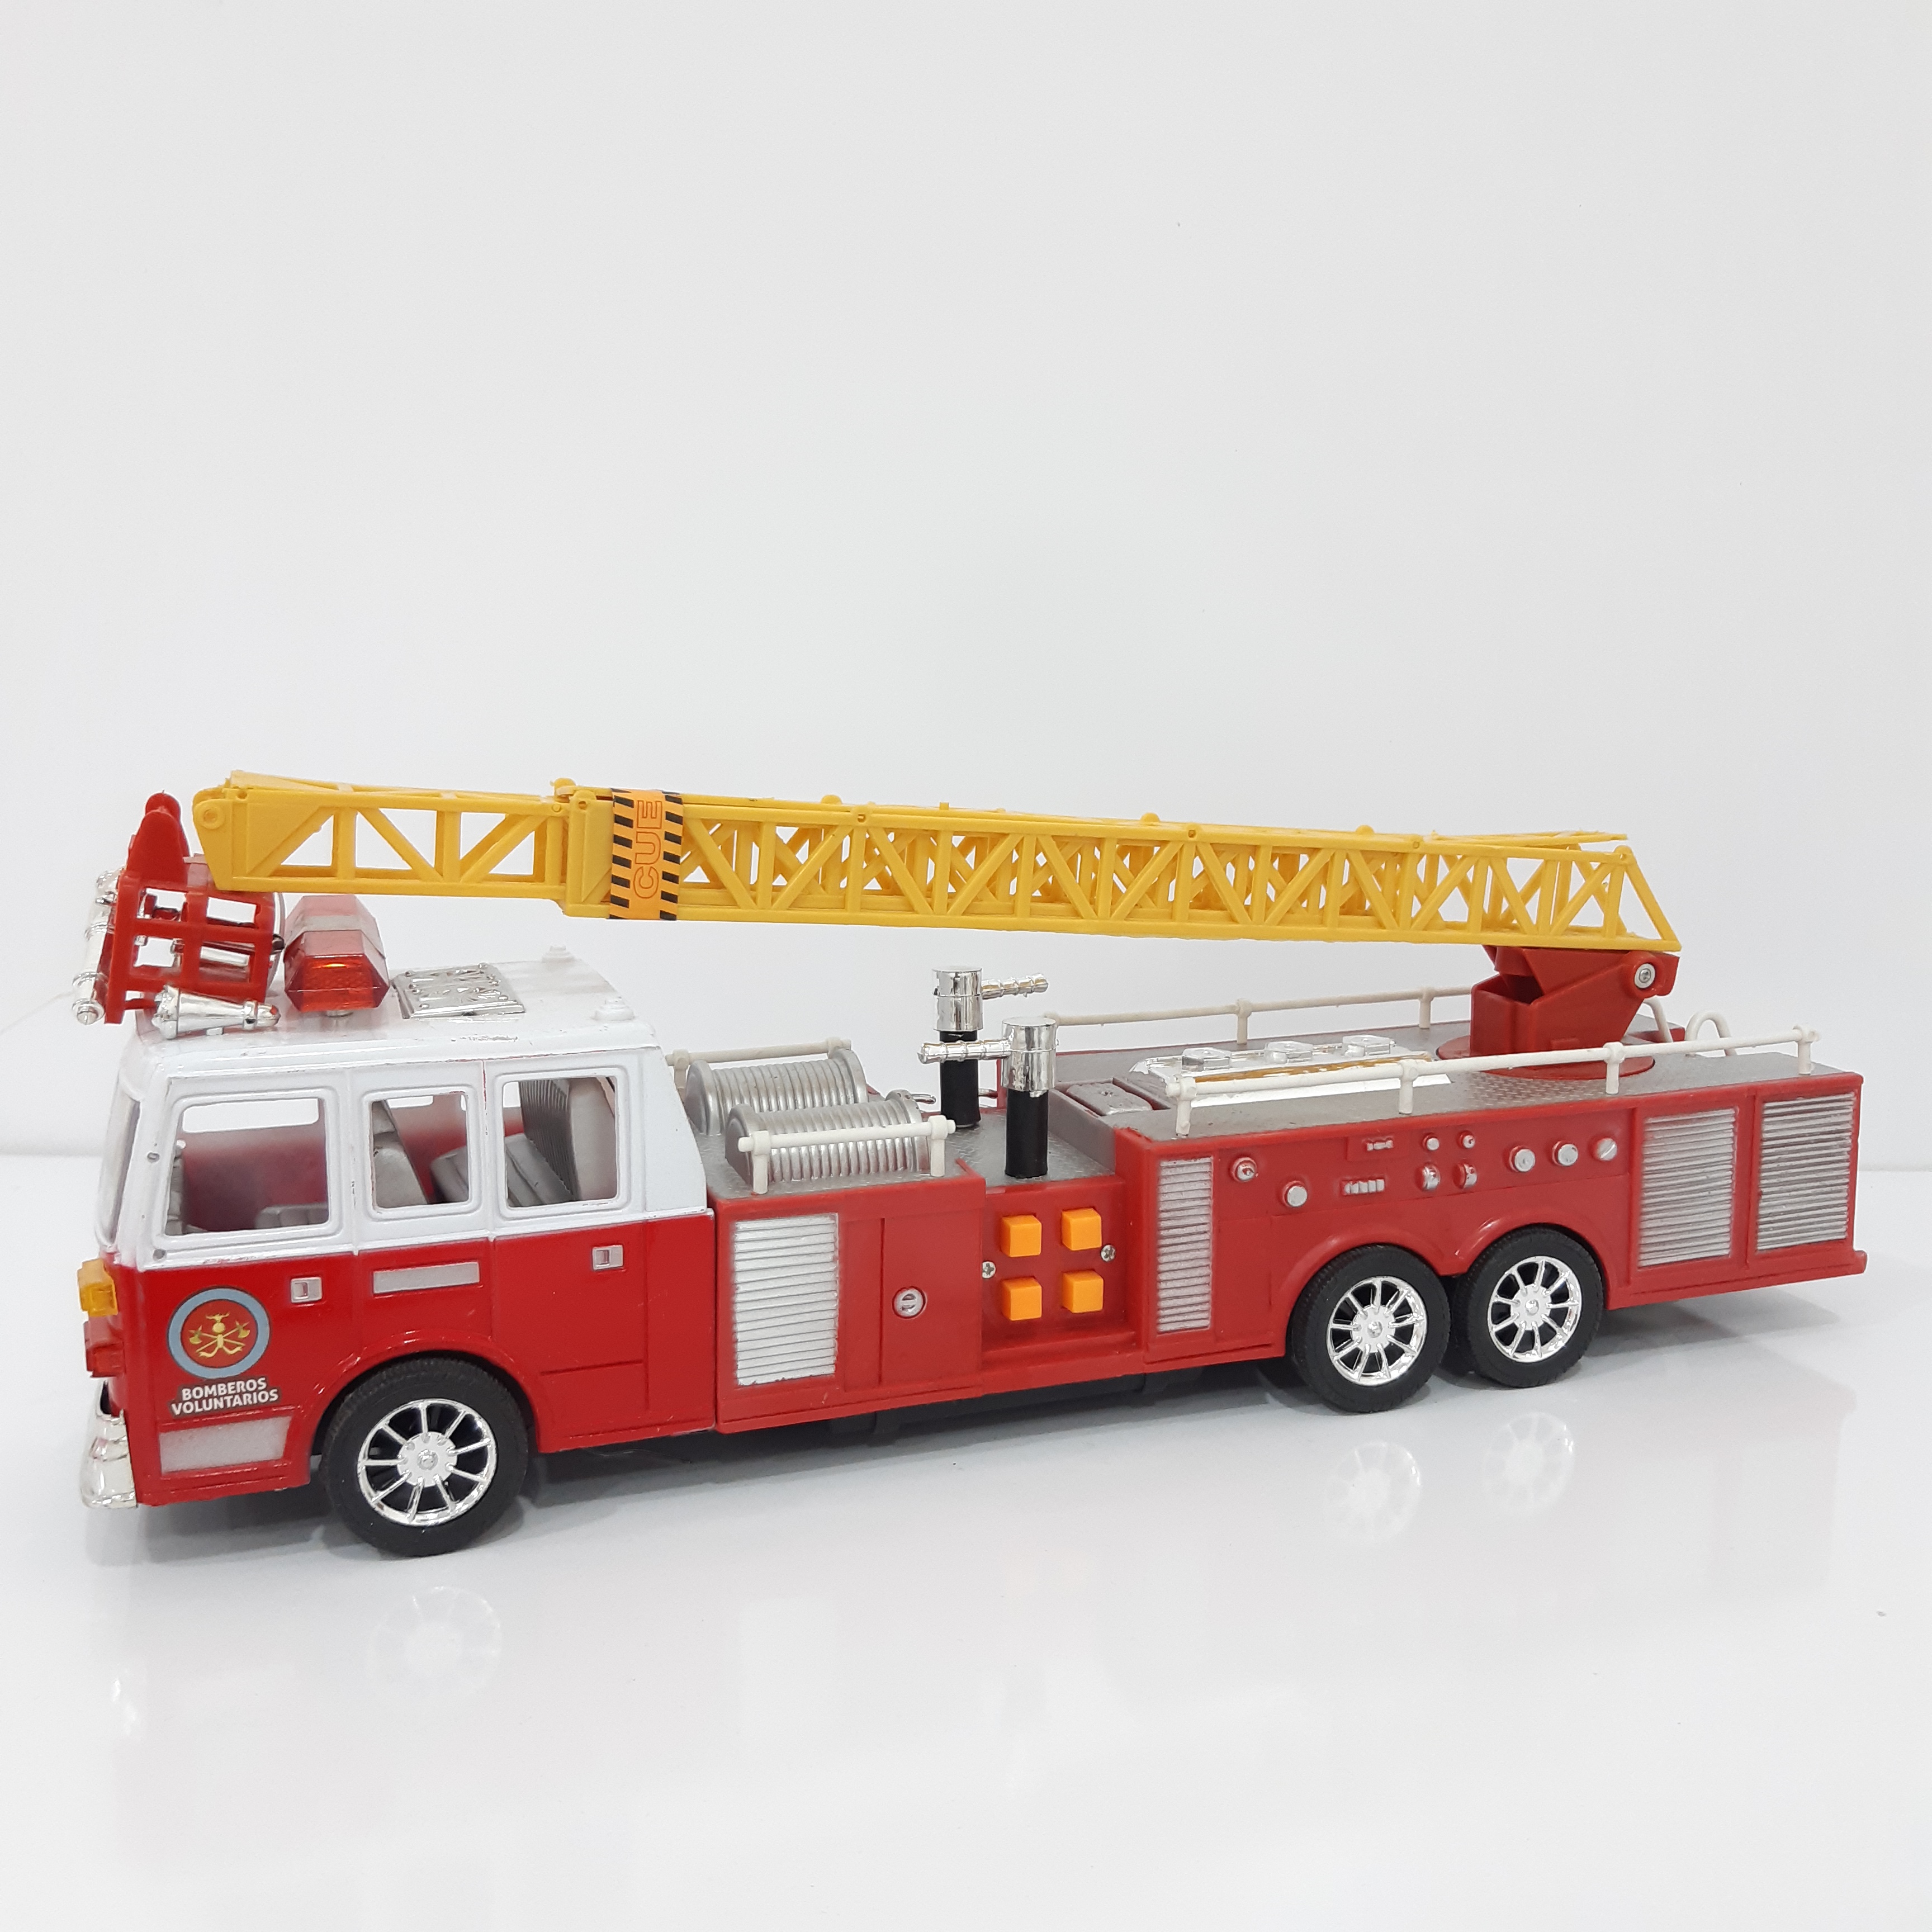 ماشین آتشنشانی 6001292